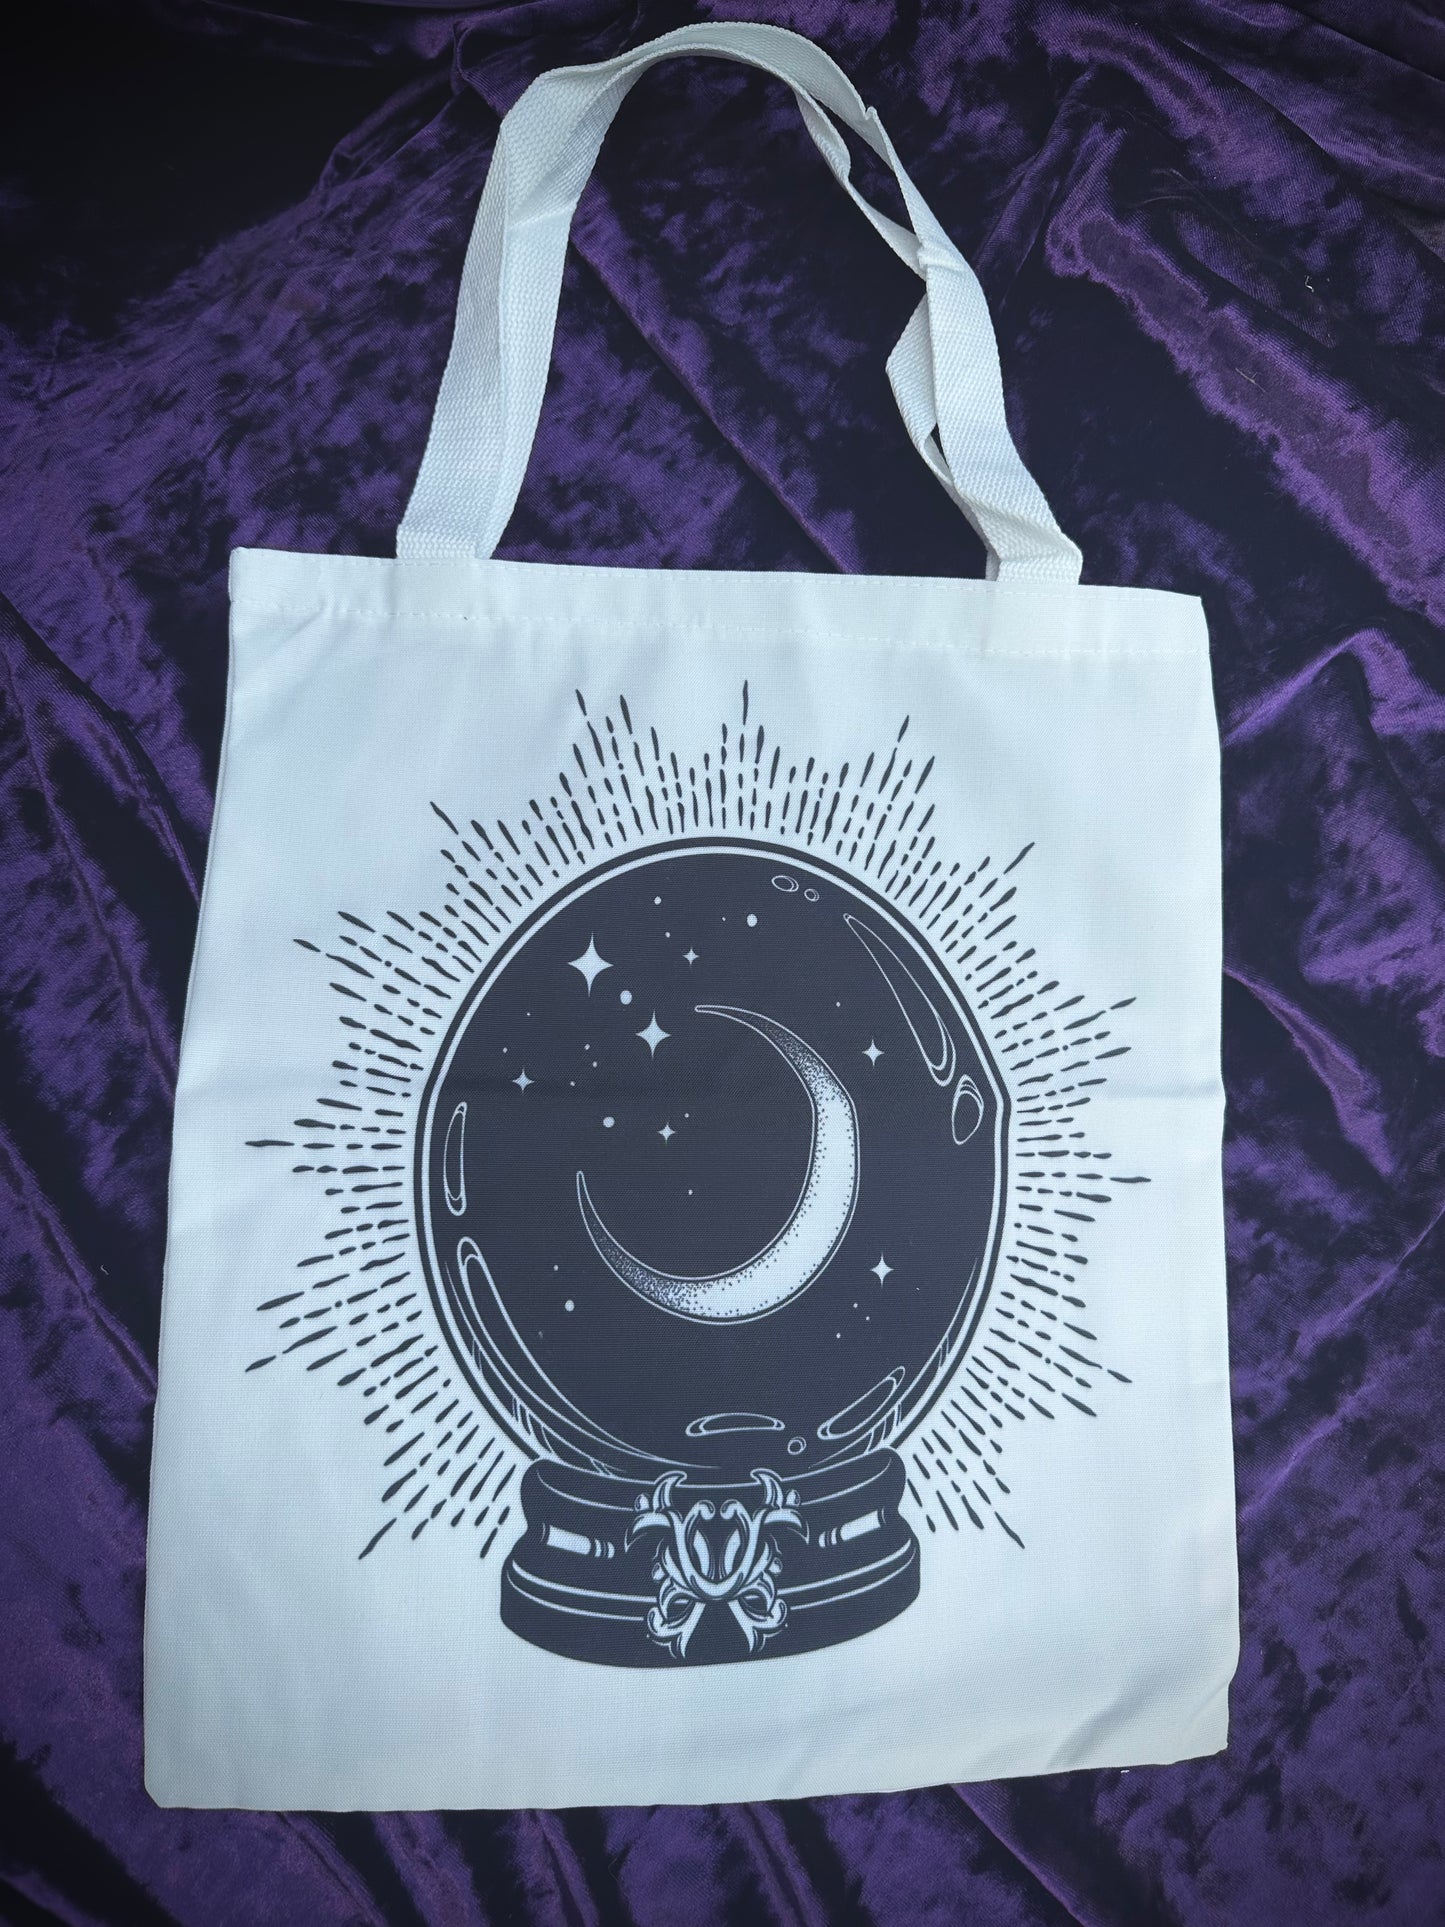 Crystal ball & moon tote bag